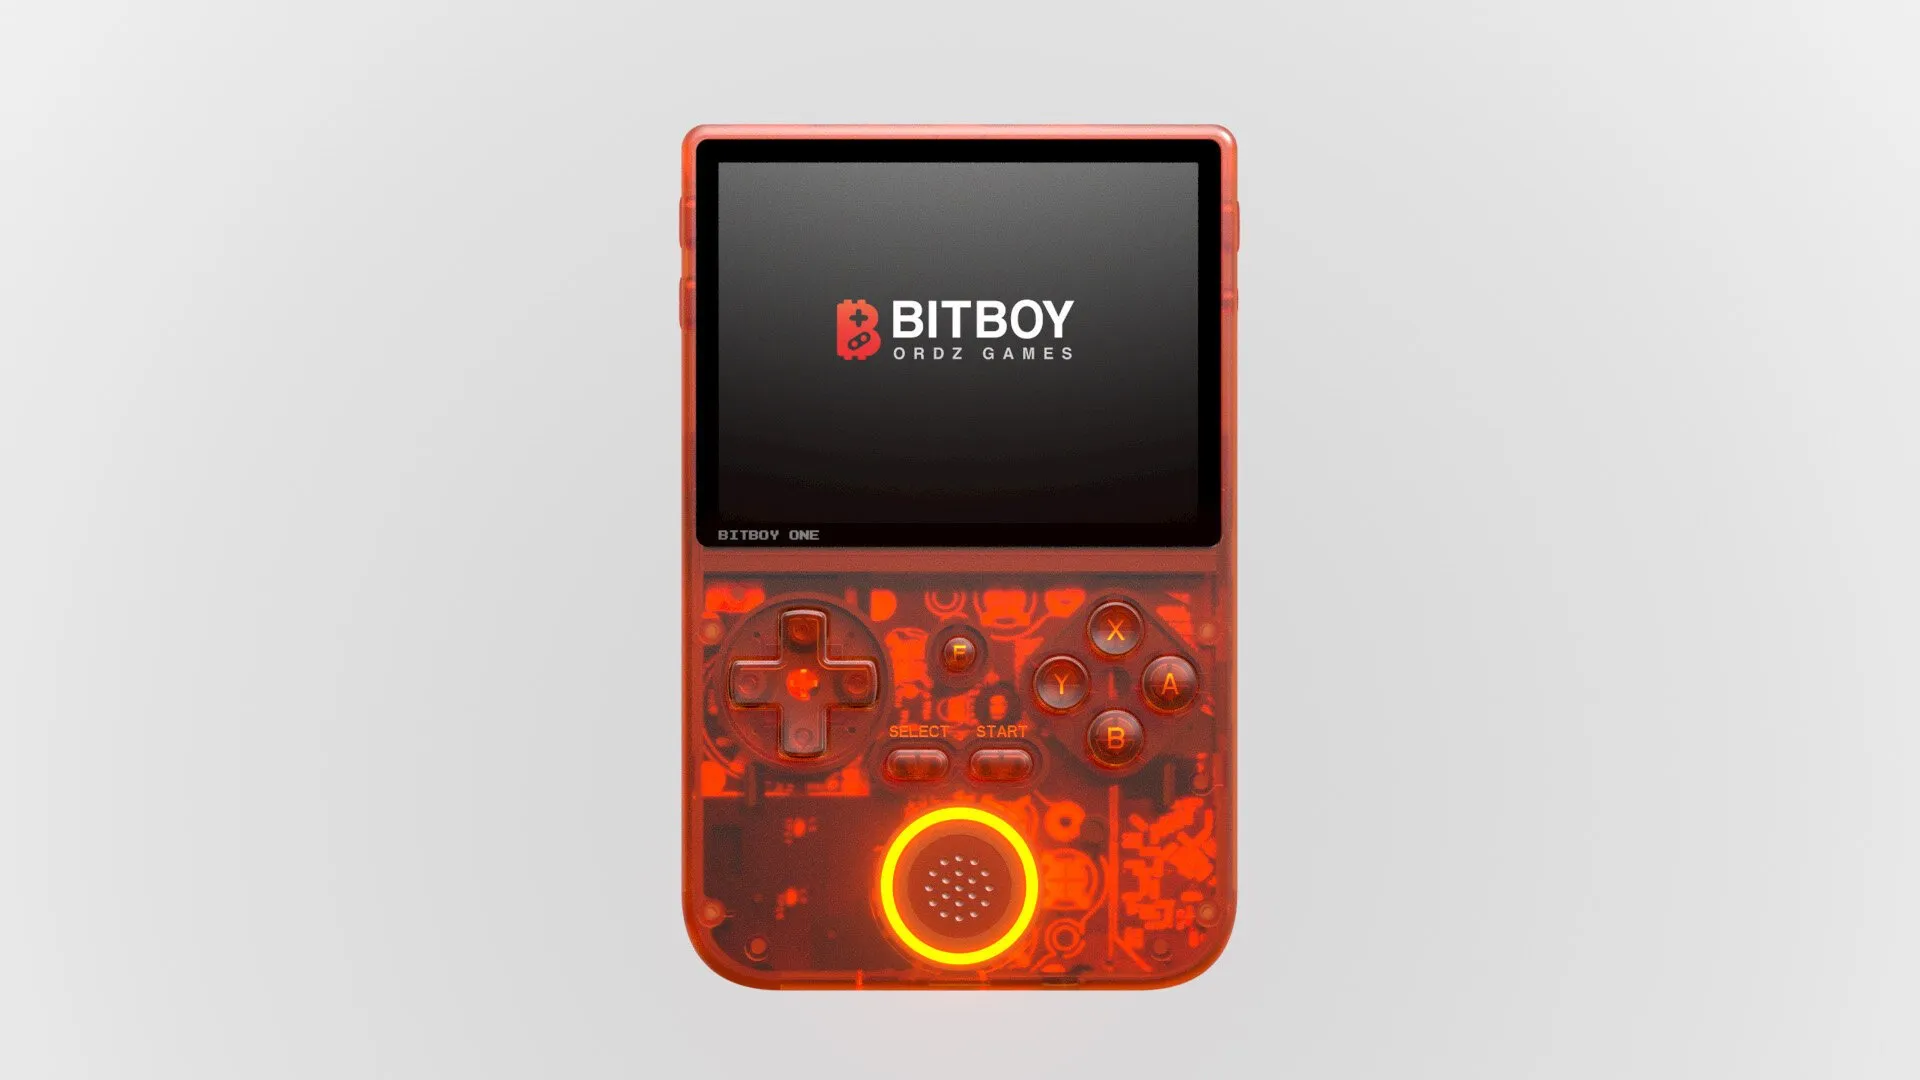 The BitBoy one gaming handheld. Image: Ordz Games